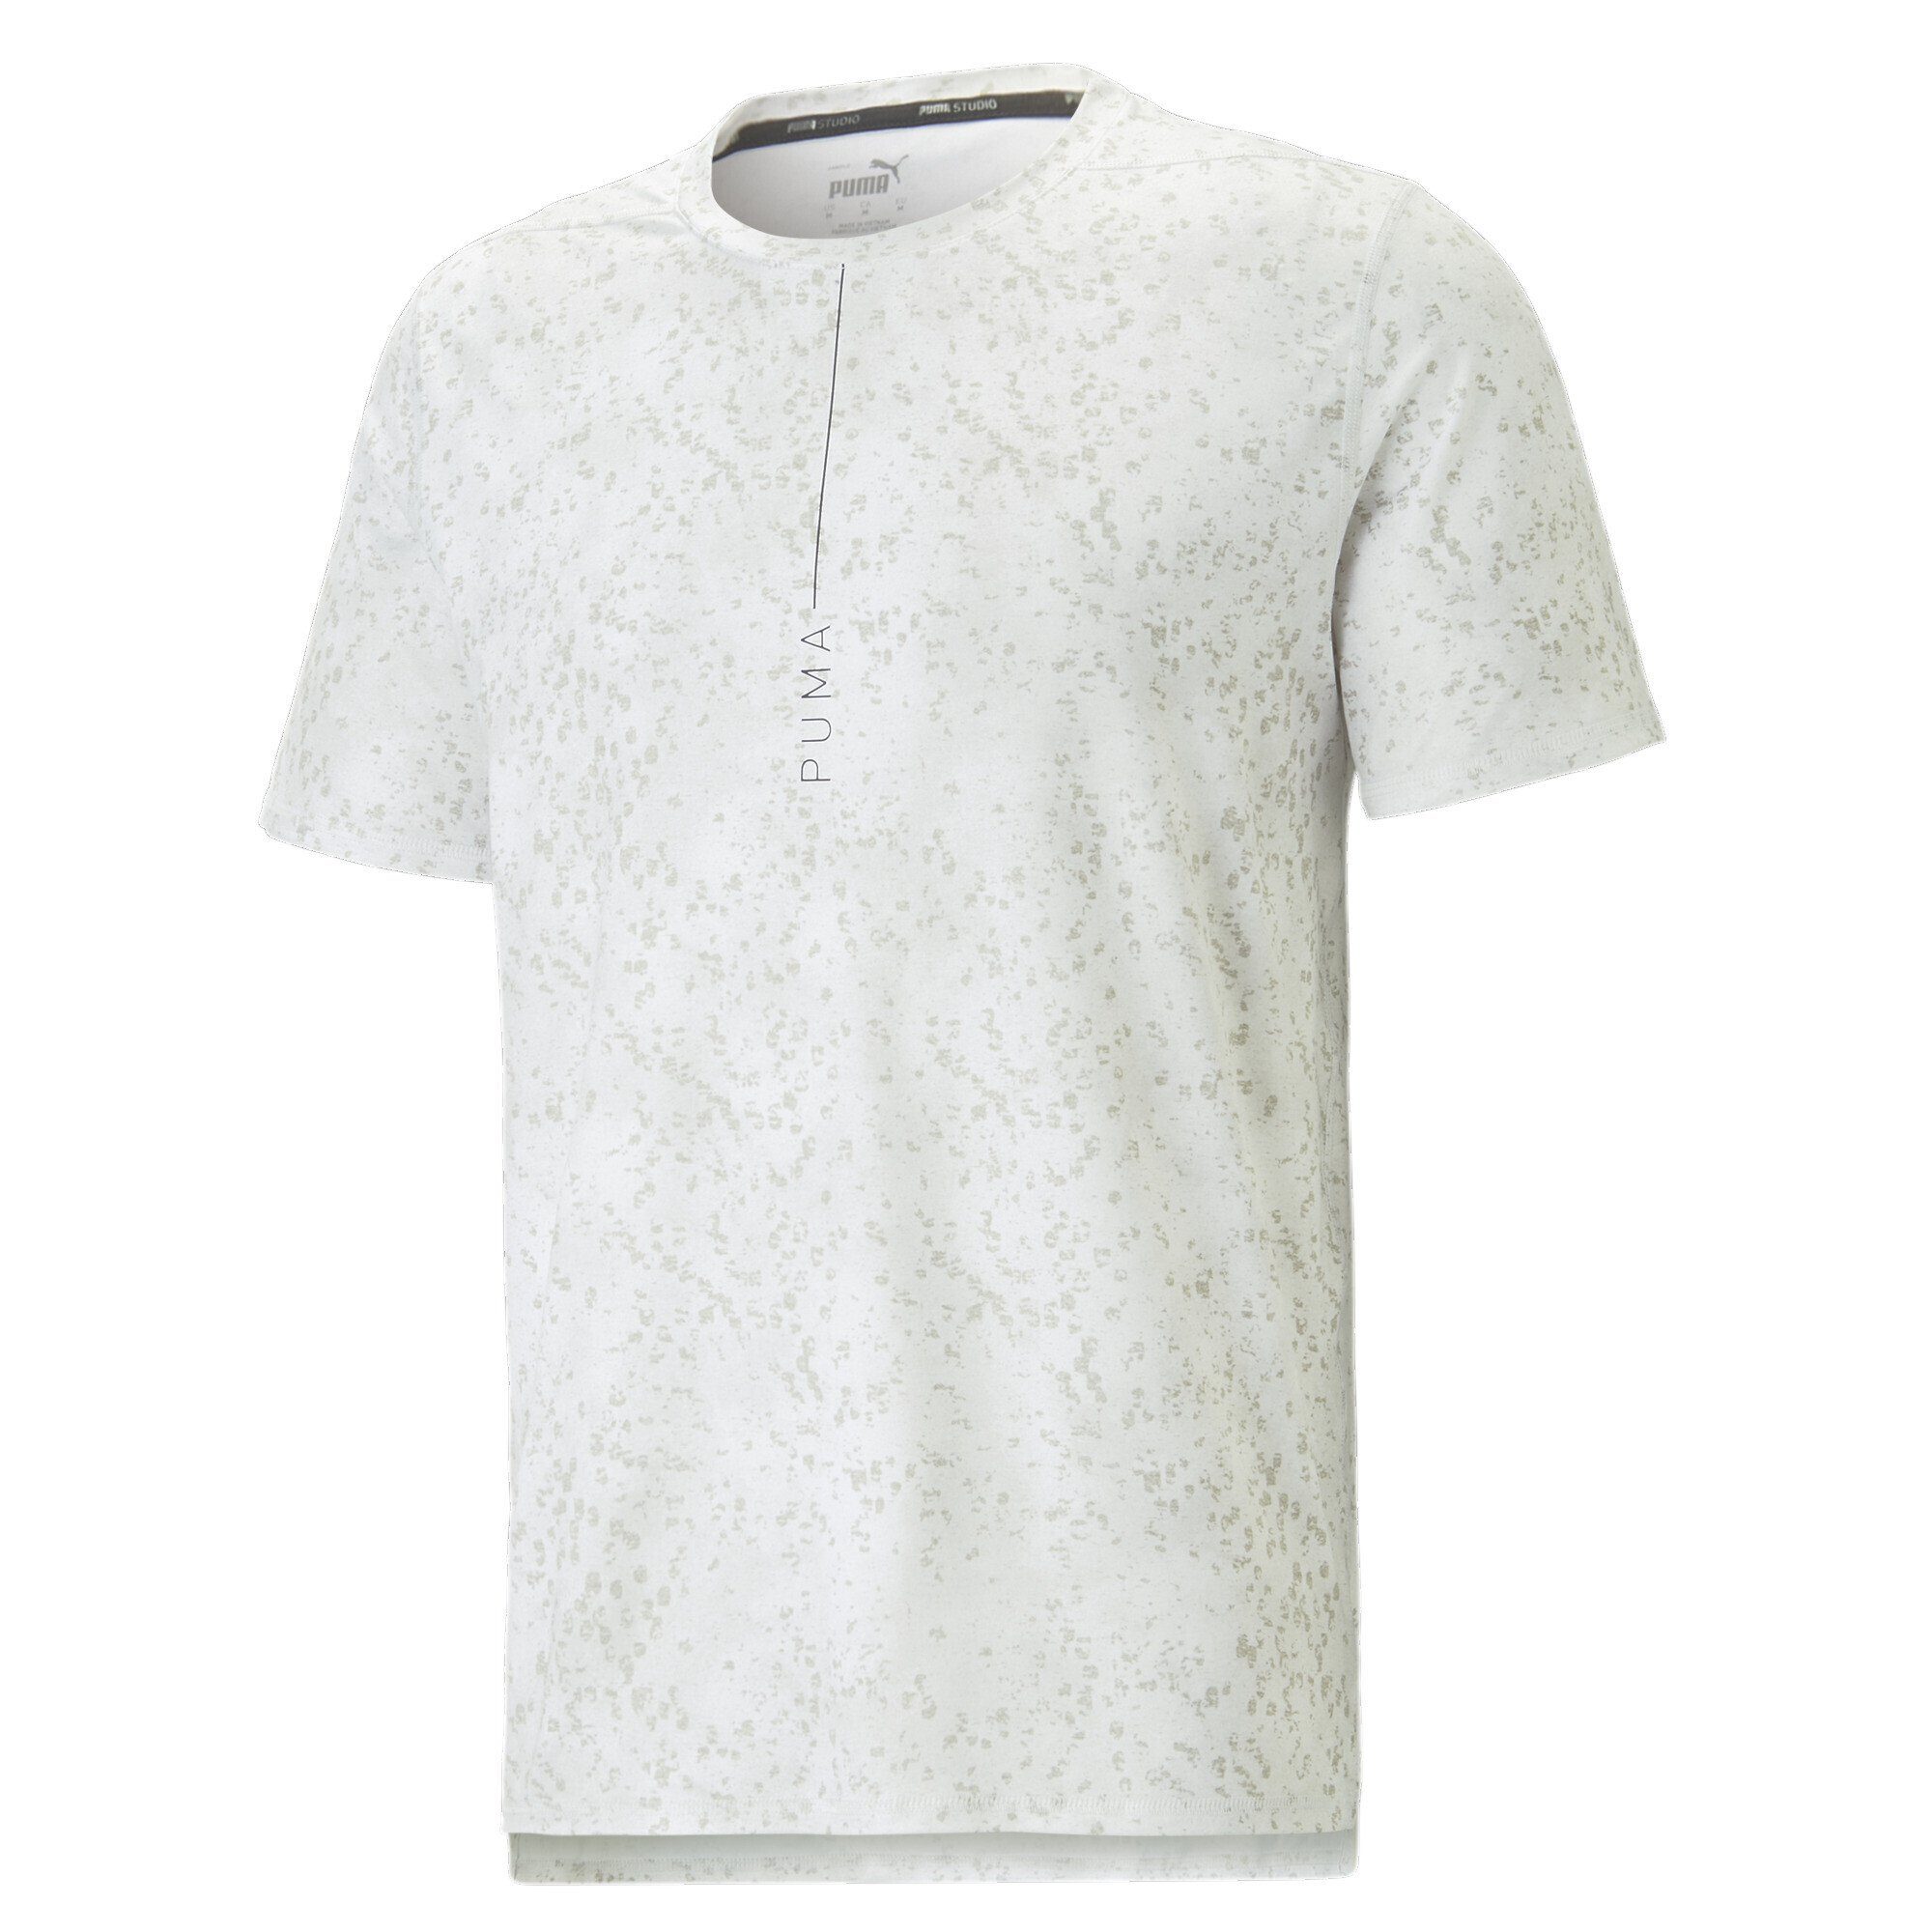 Trainings-T-Shirt White Printed Yogashirt Studio PUMA Lite Yogini Herren